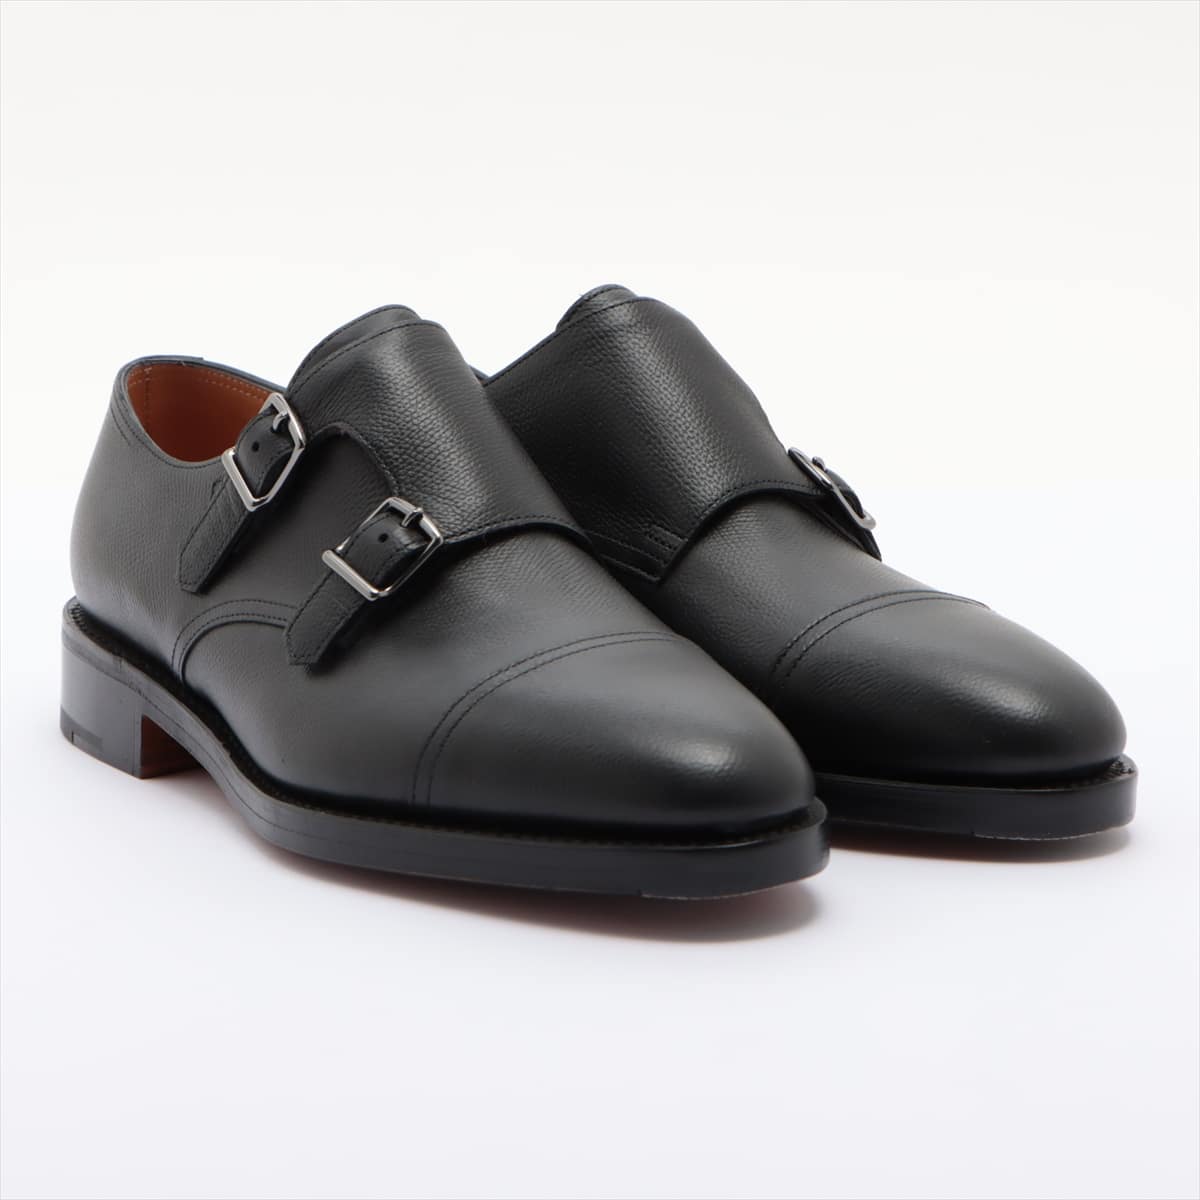 John Lobb Leather Leather shoes 6 1/2 Men's Black william 2 E9795 